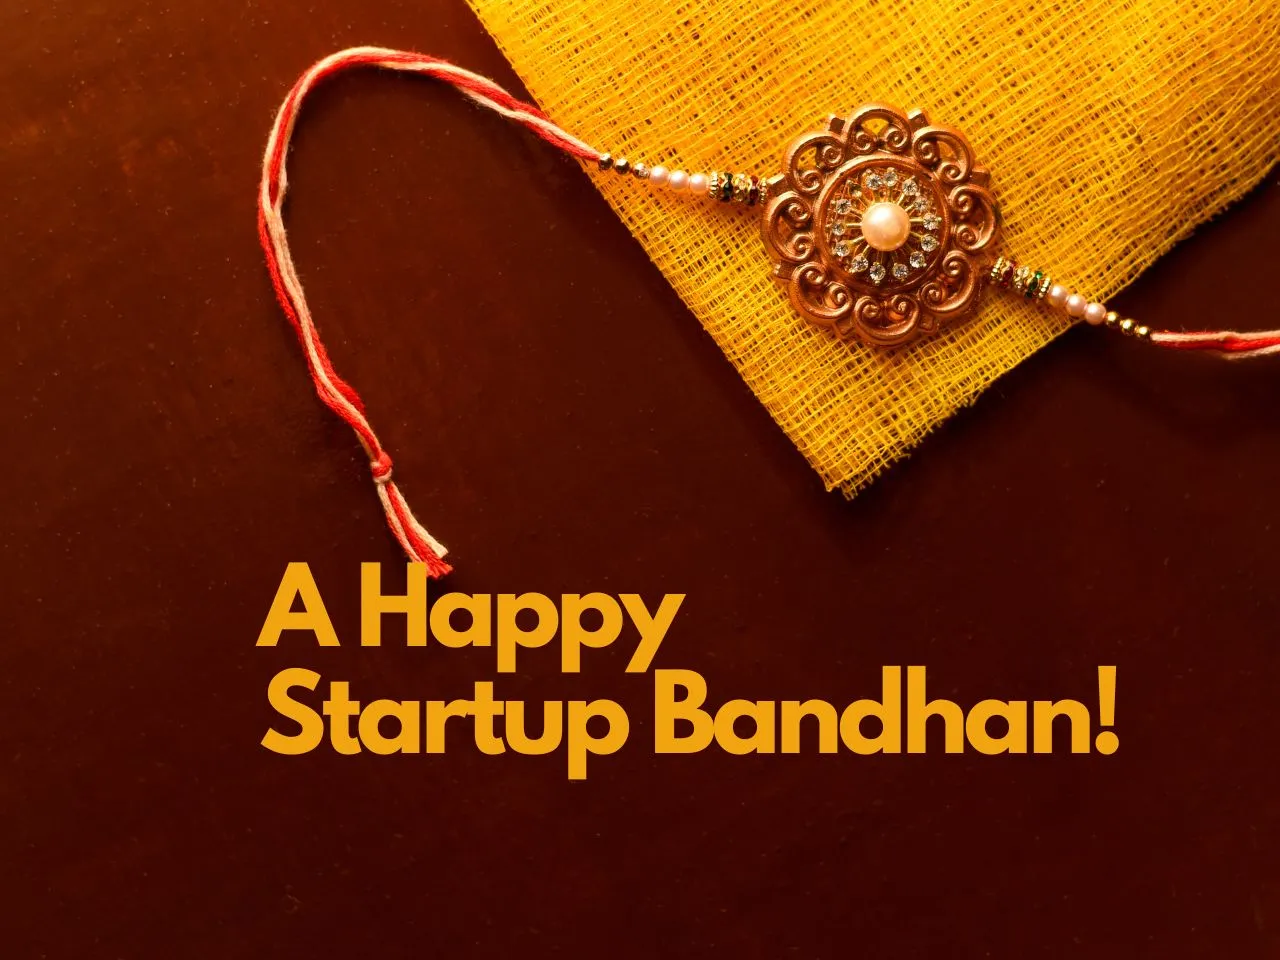 Startup Bandhan